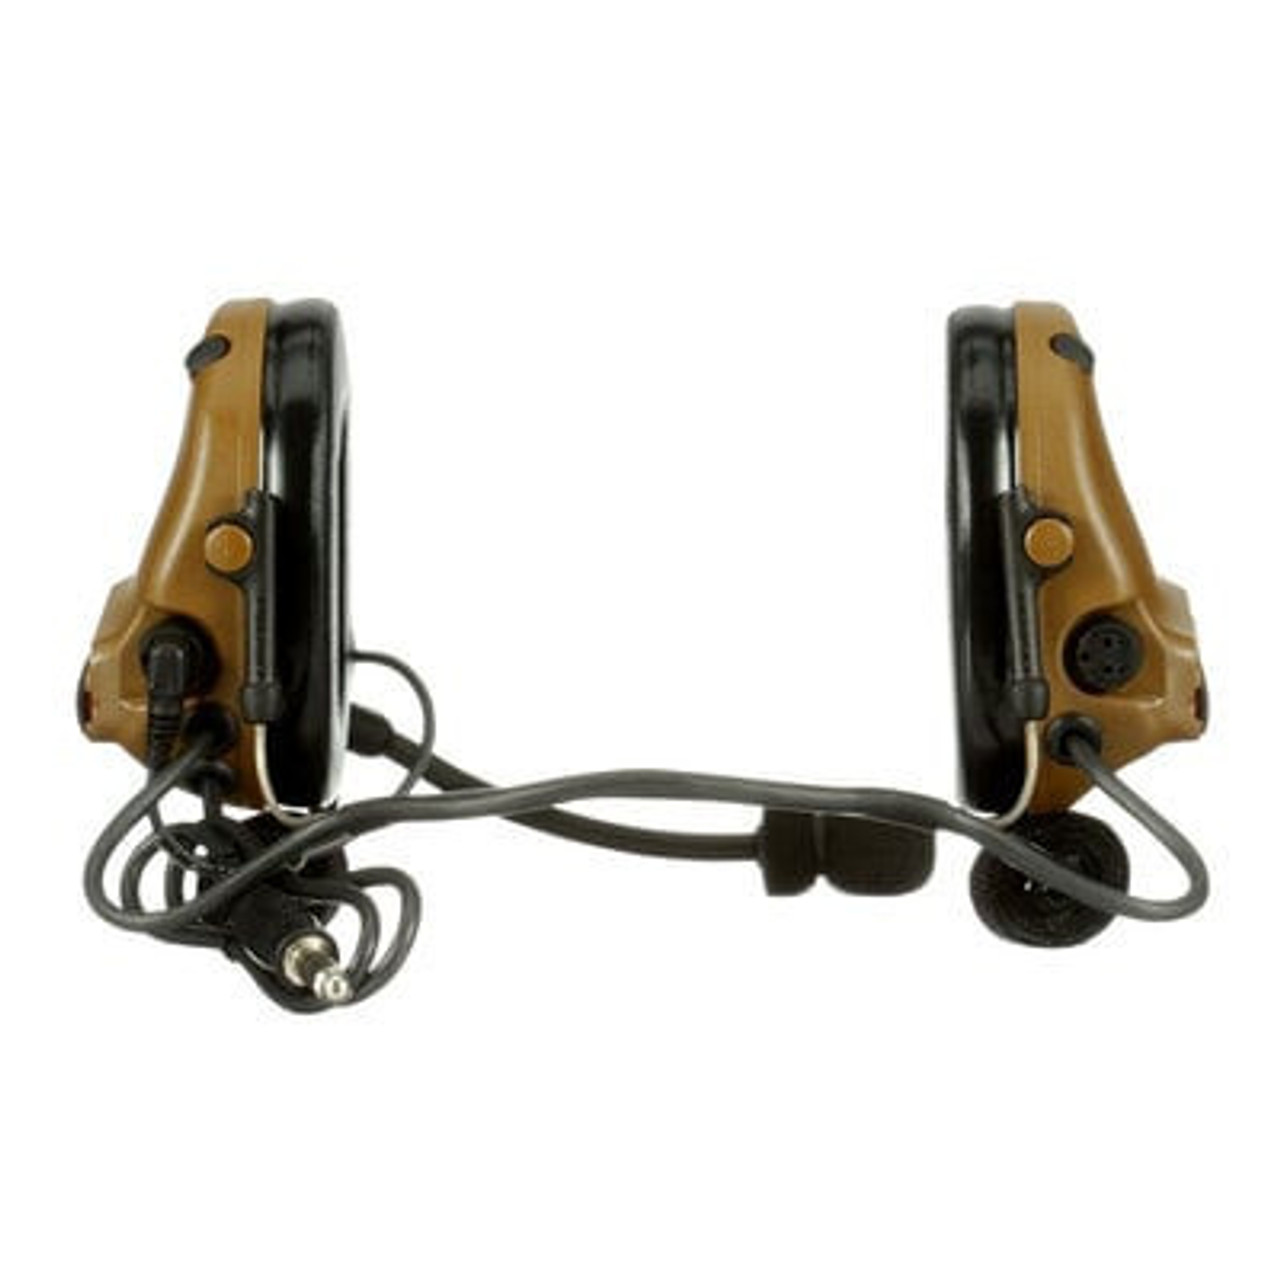 3M PELTOR ComTac V Headset MT20H682BB-47 CY - Neckband - Single